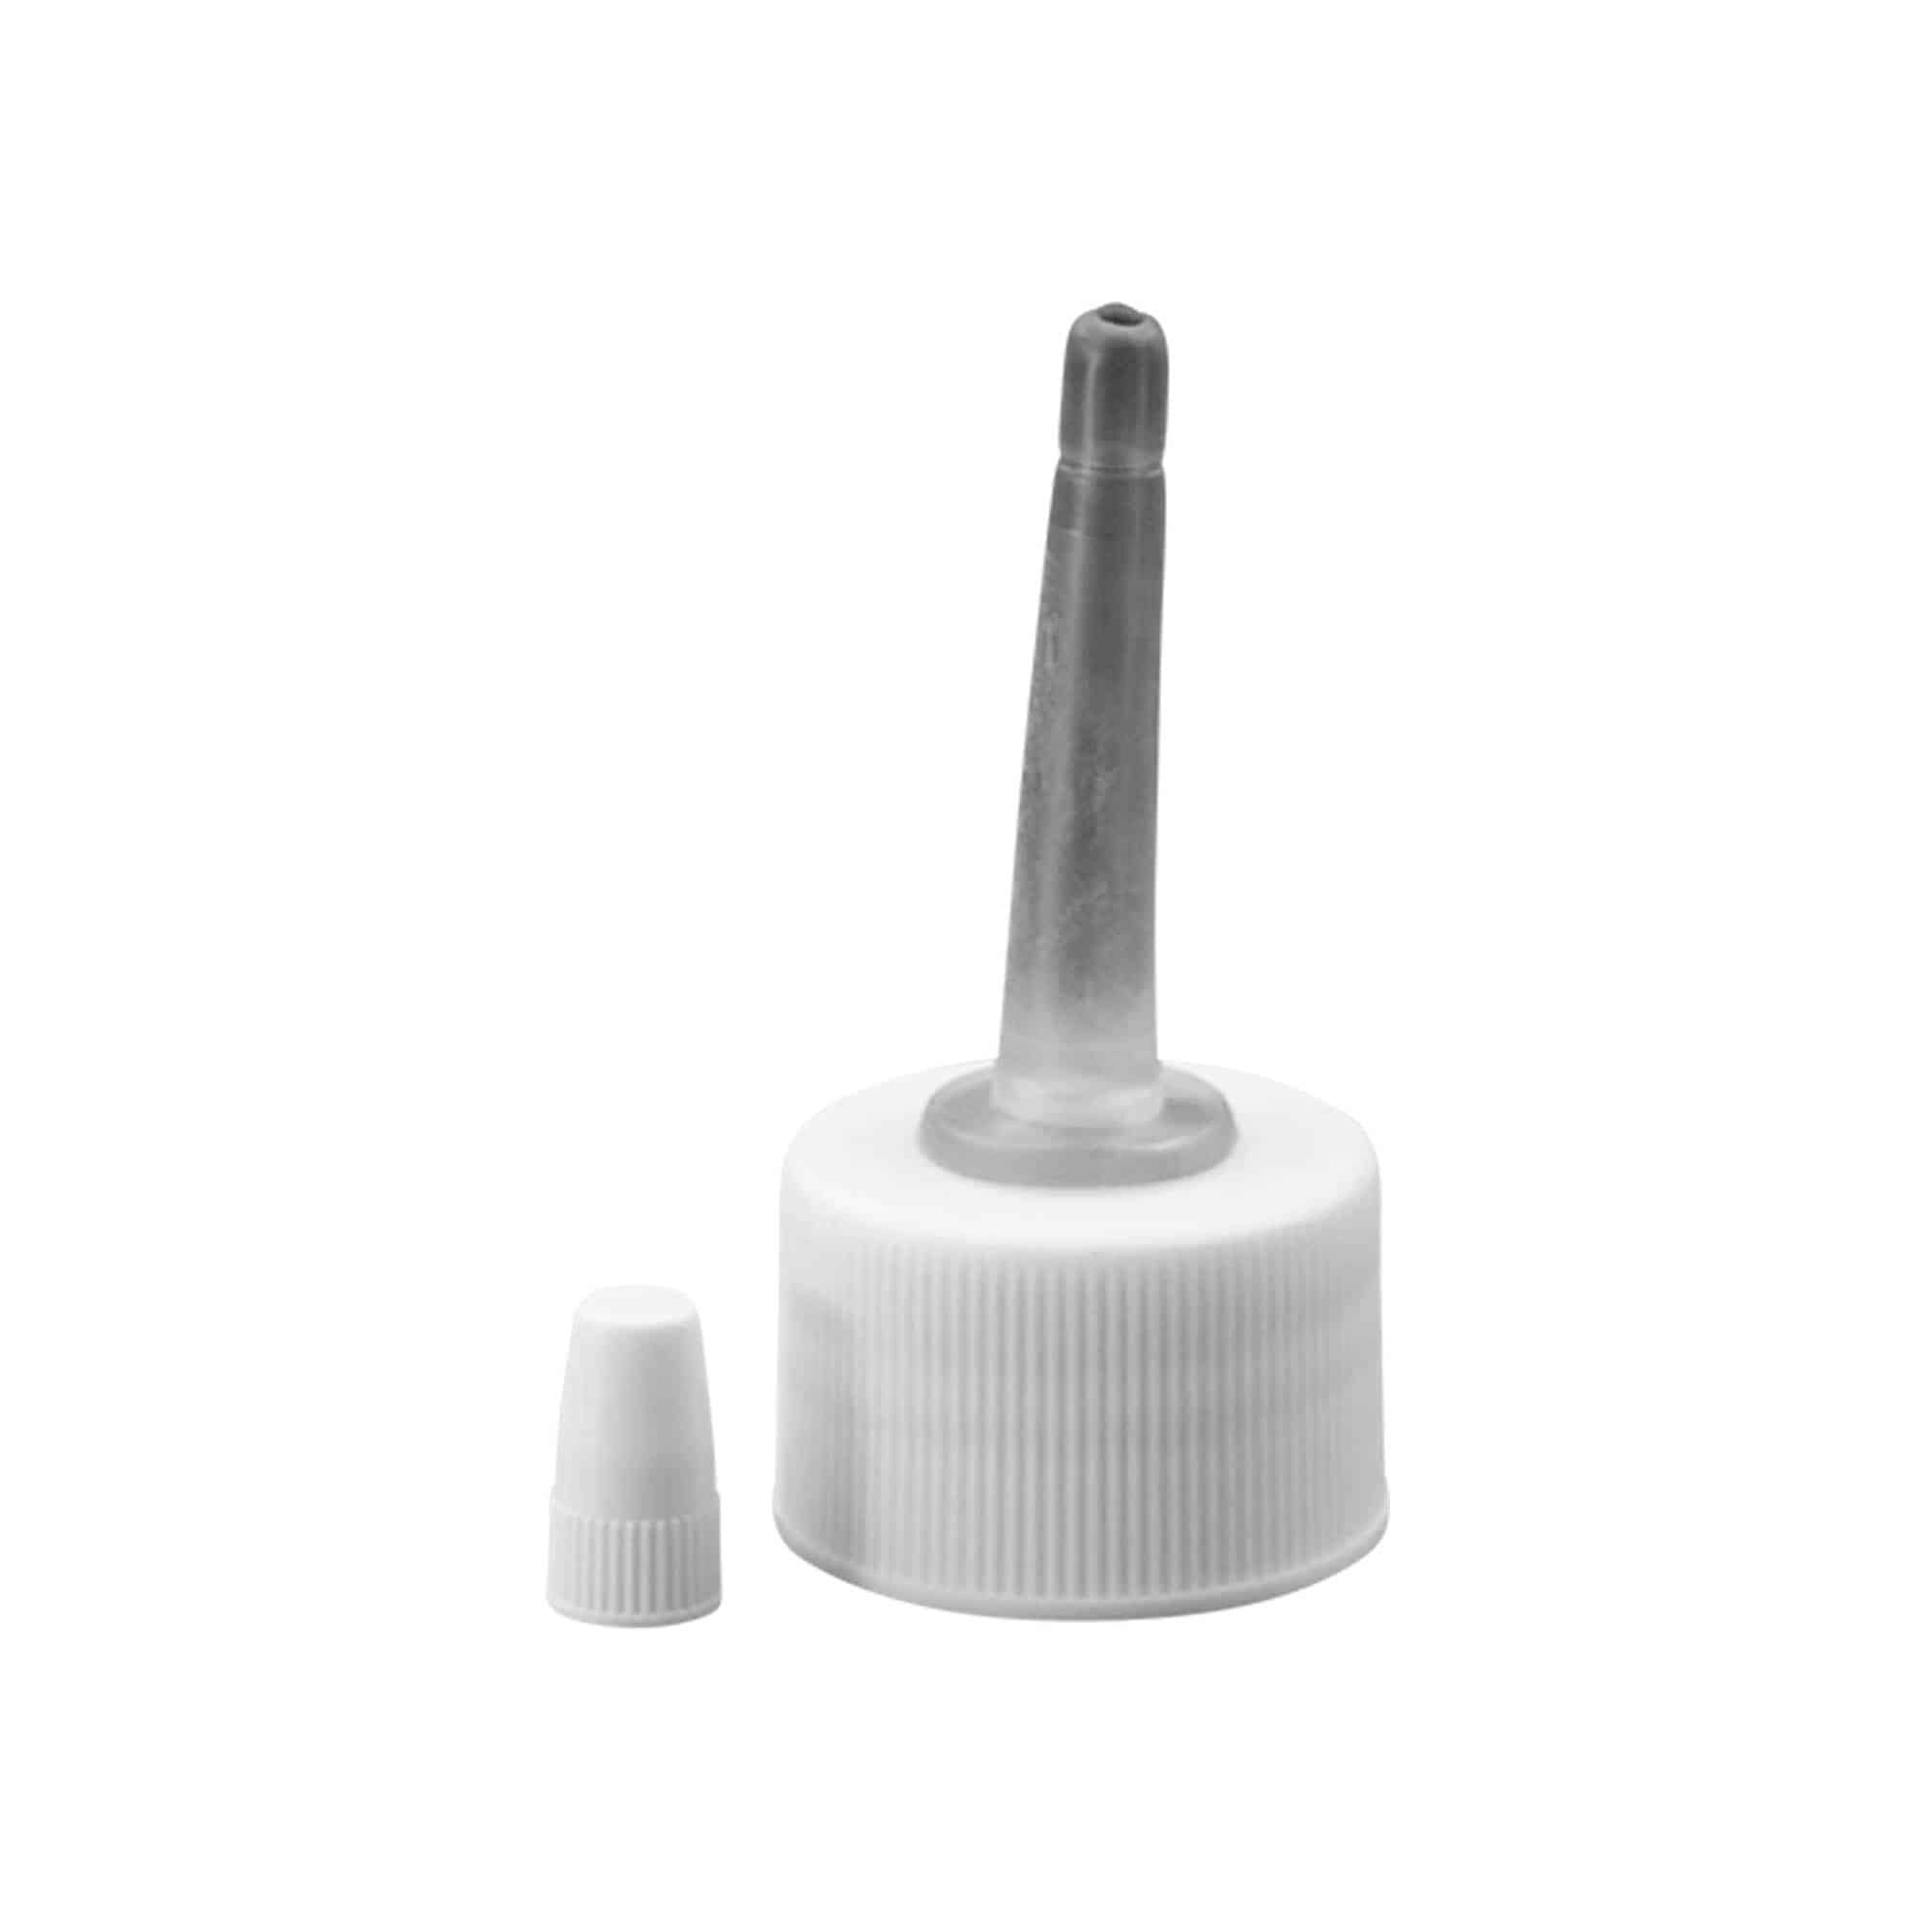 Schraubverschluss mit Applikator, PP-Kunststoff, weiß, für Mündung: GPI 24/410